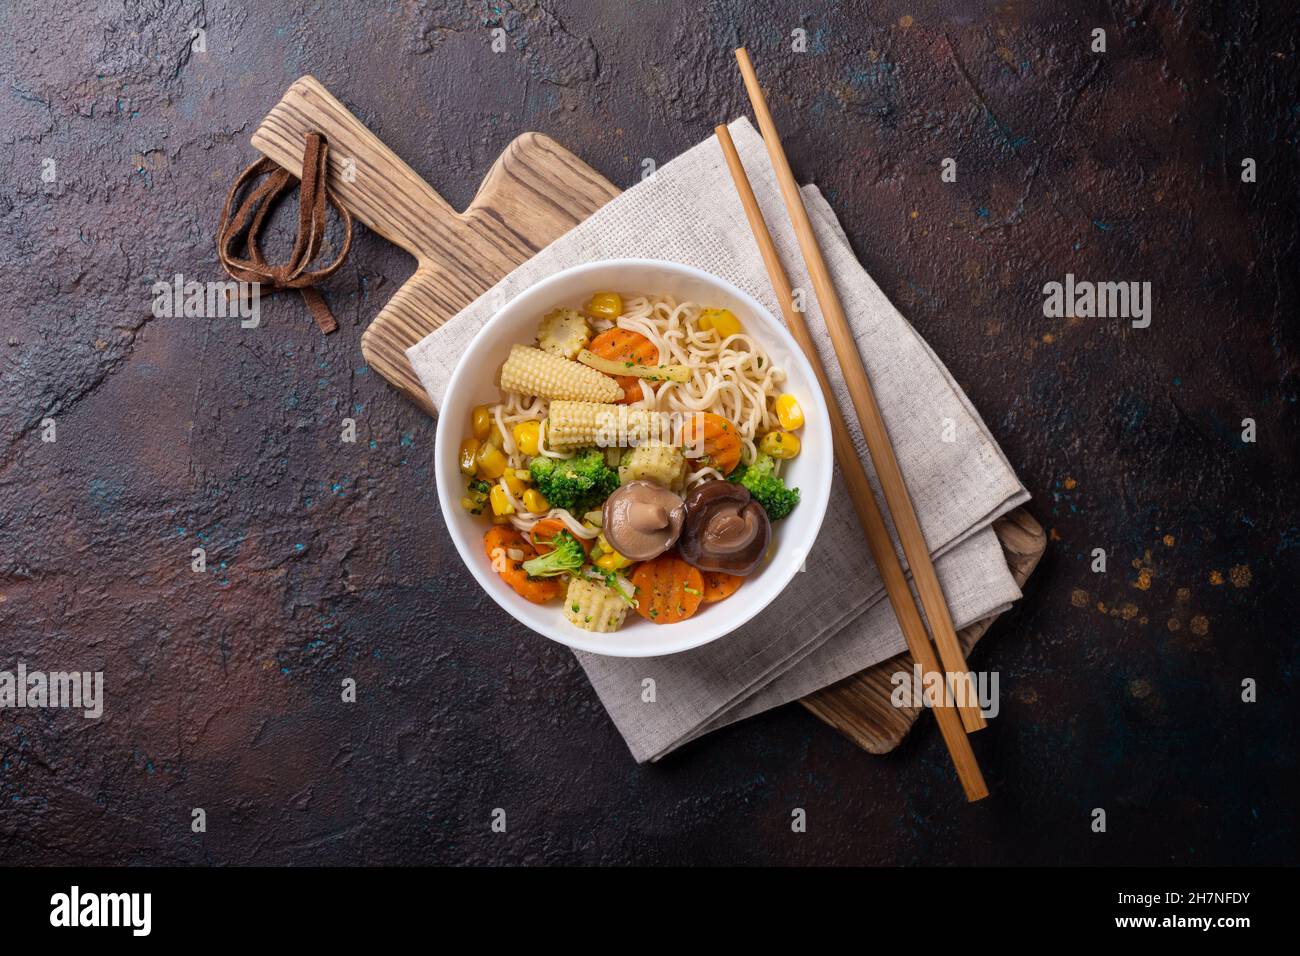 Vista superior del plato con fideos asiáticos, maíz, brócoli, zanahoria y setas shiitake sobre fondo de hormigón oscuro Foto de stock